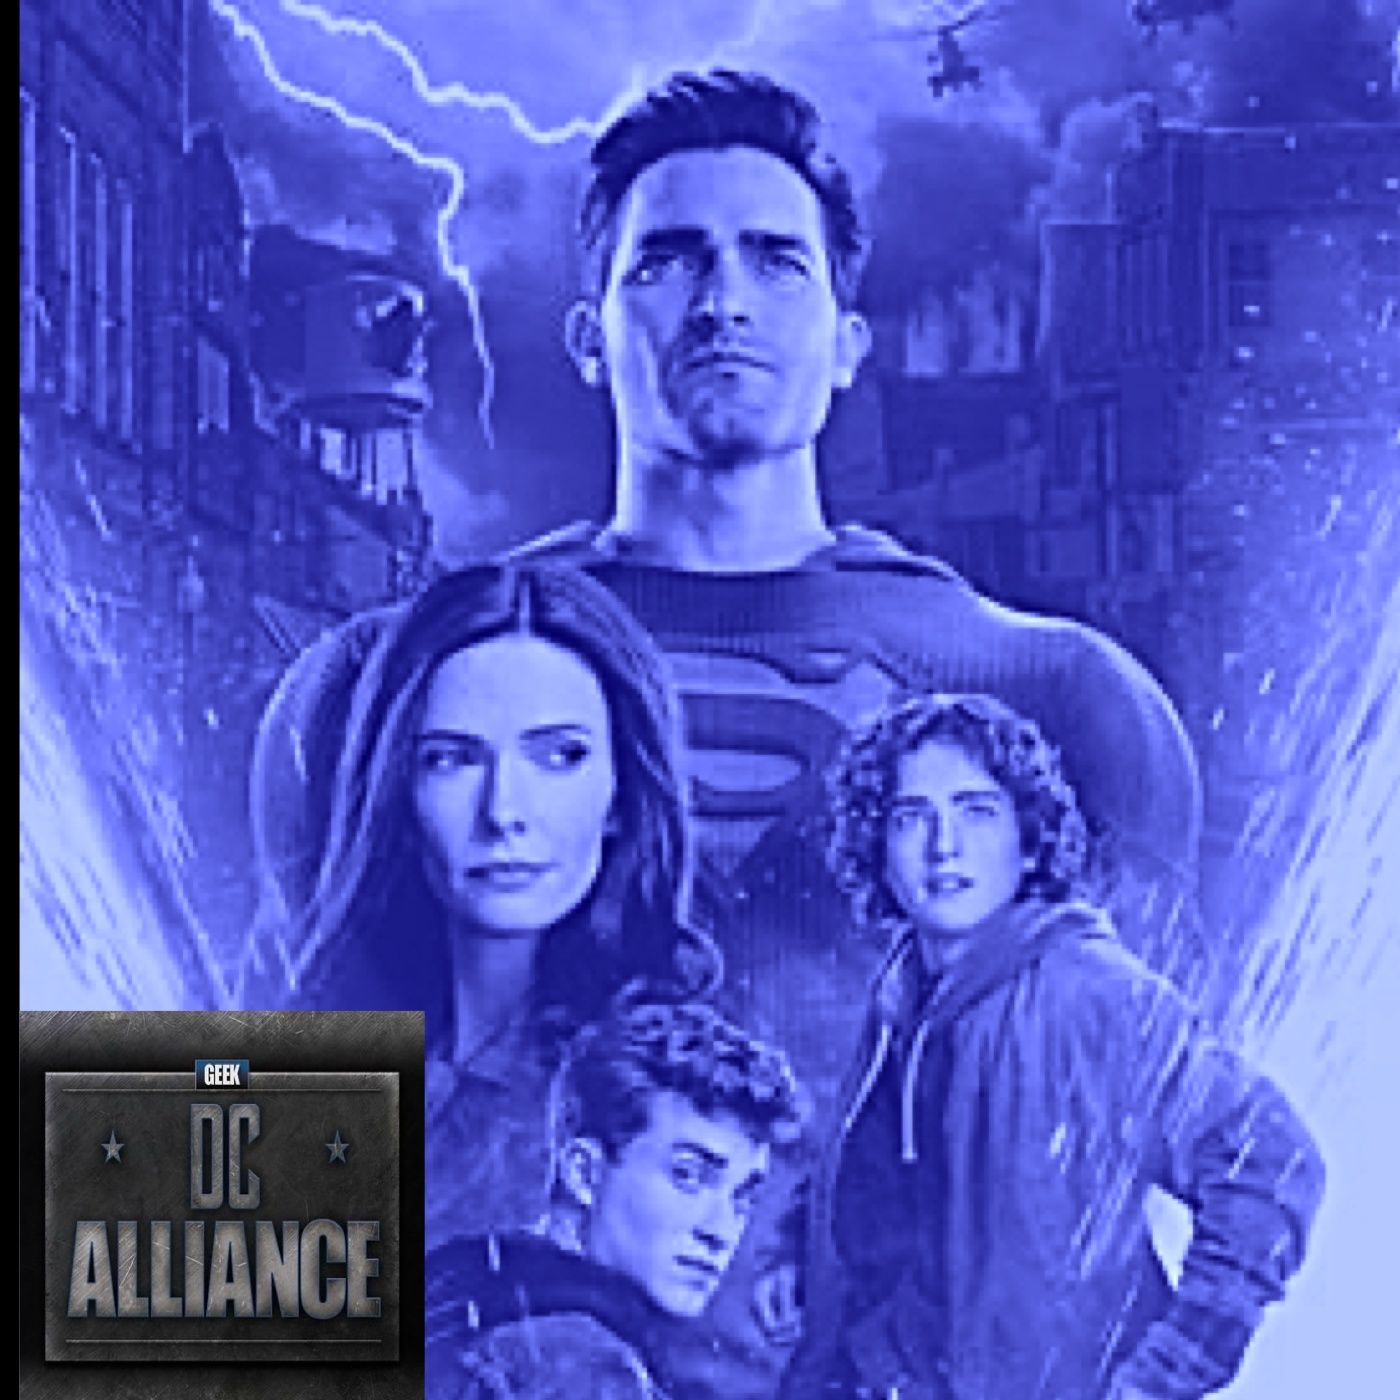 Superman & Lois 2x09 Review- DC Alliance Ch. 106